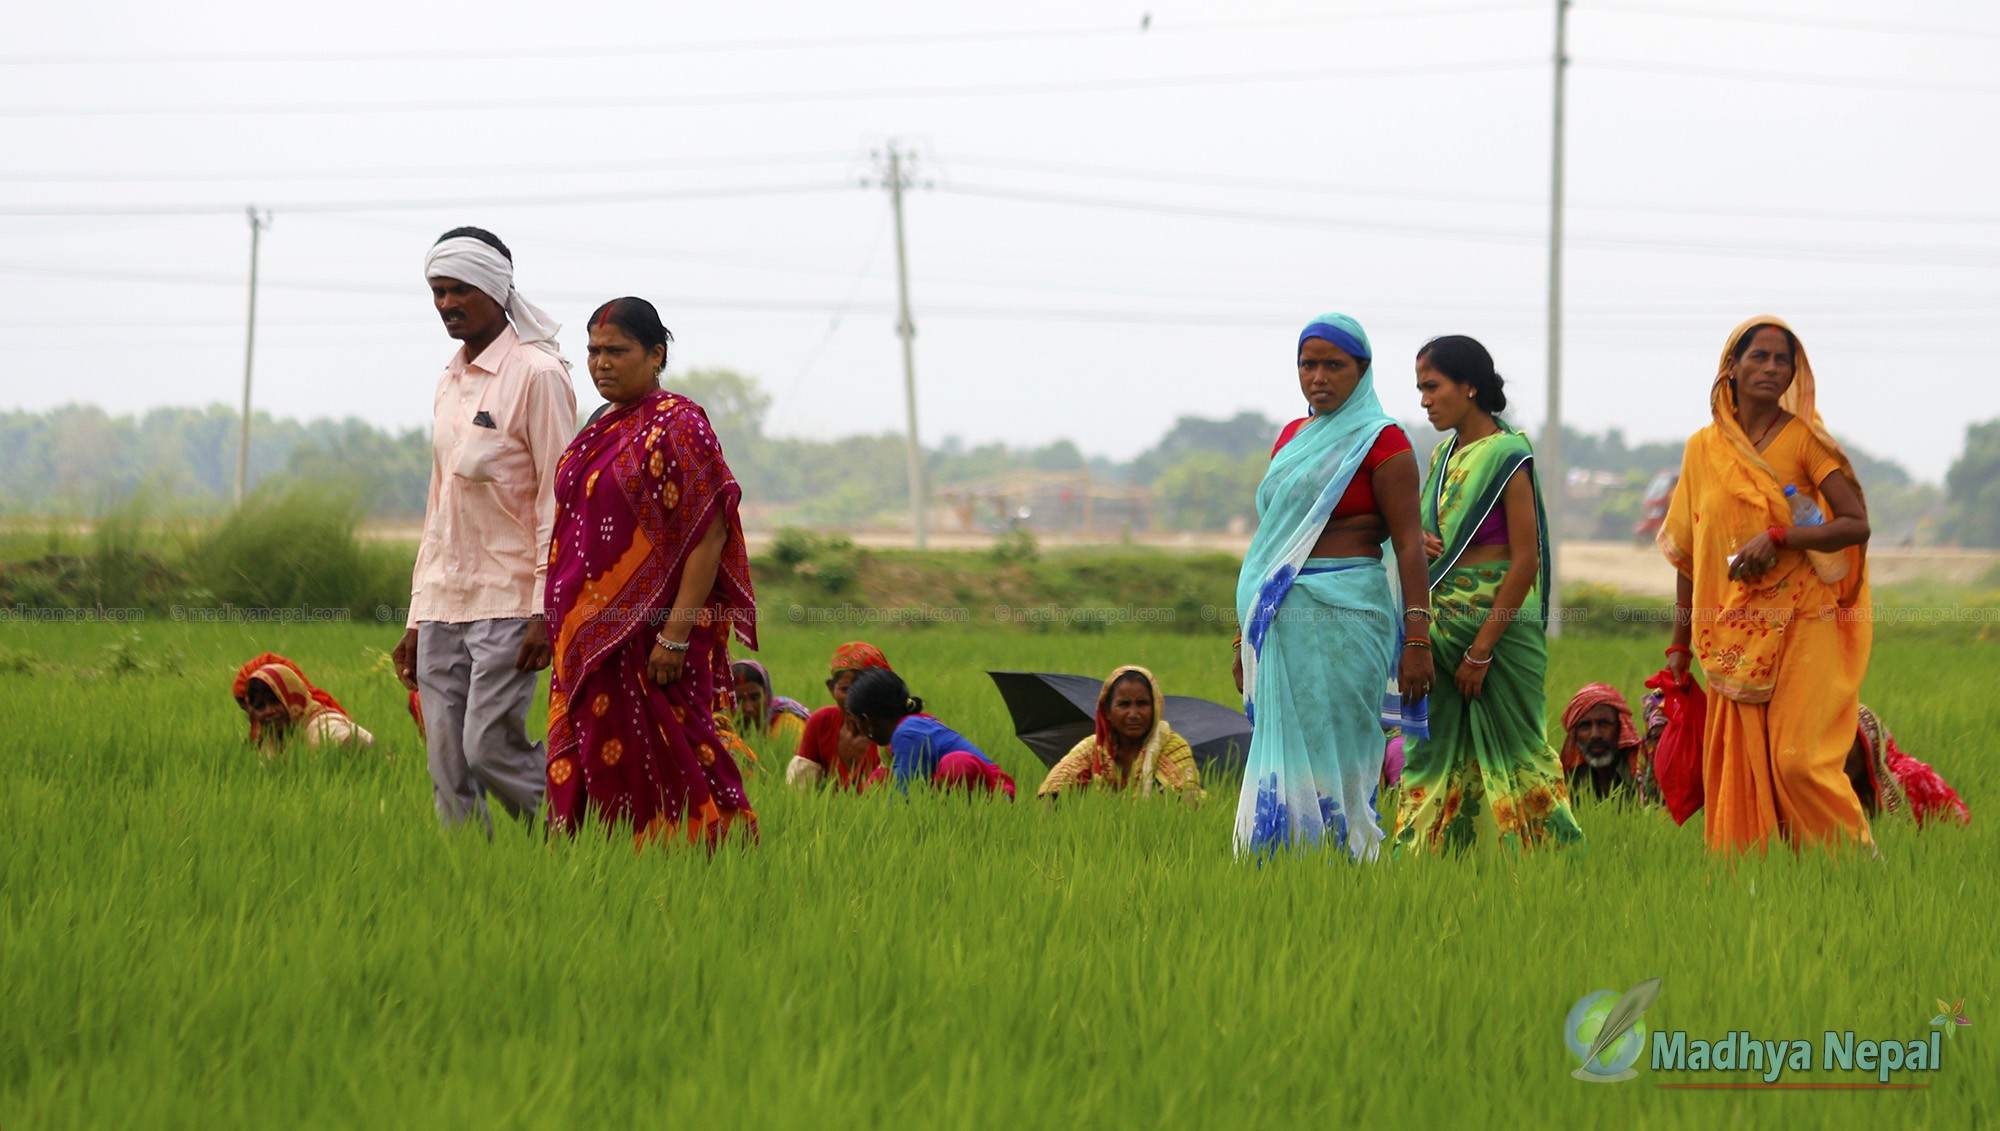 कृषि प्रवर्द्धनका लागि शुक्रबार पनि सार्वजनिक बिदा दिने श्रीलंकाको निर्णय